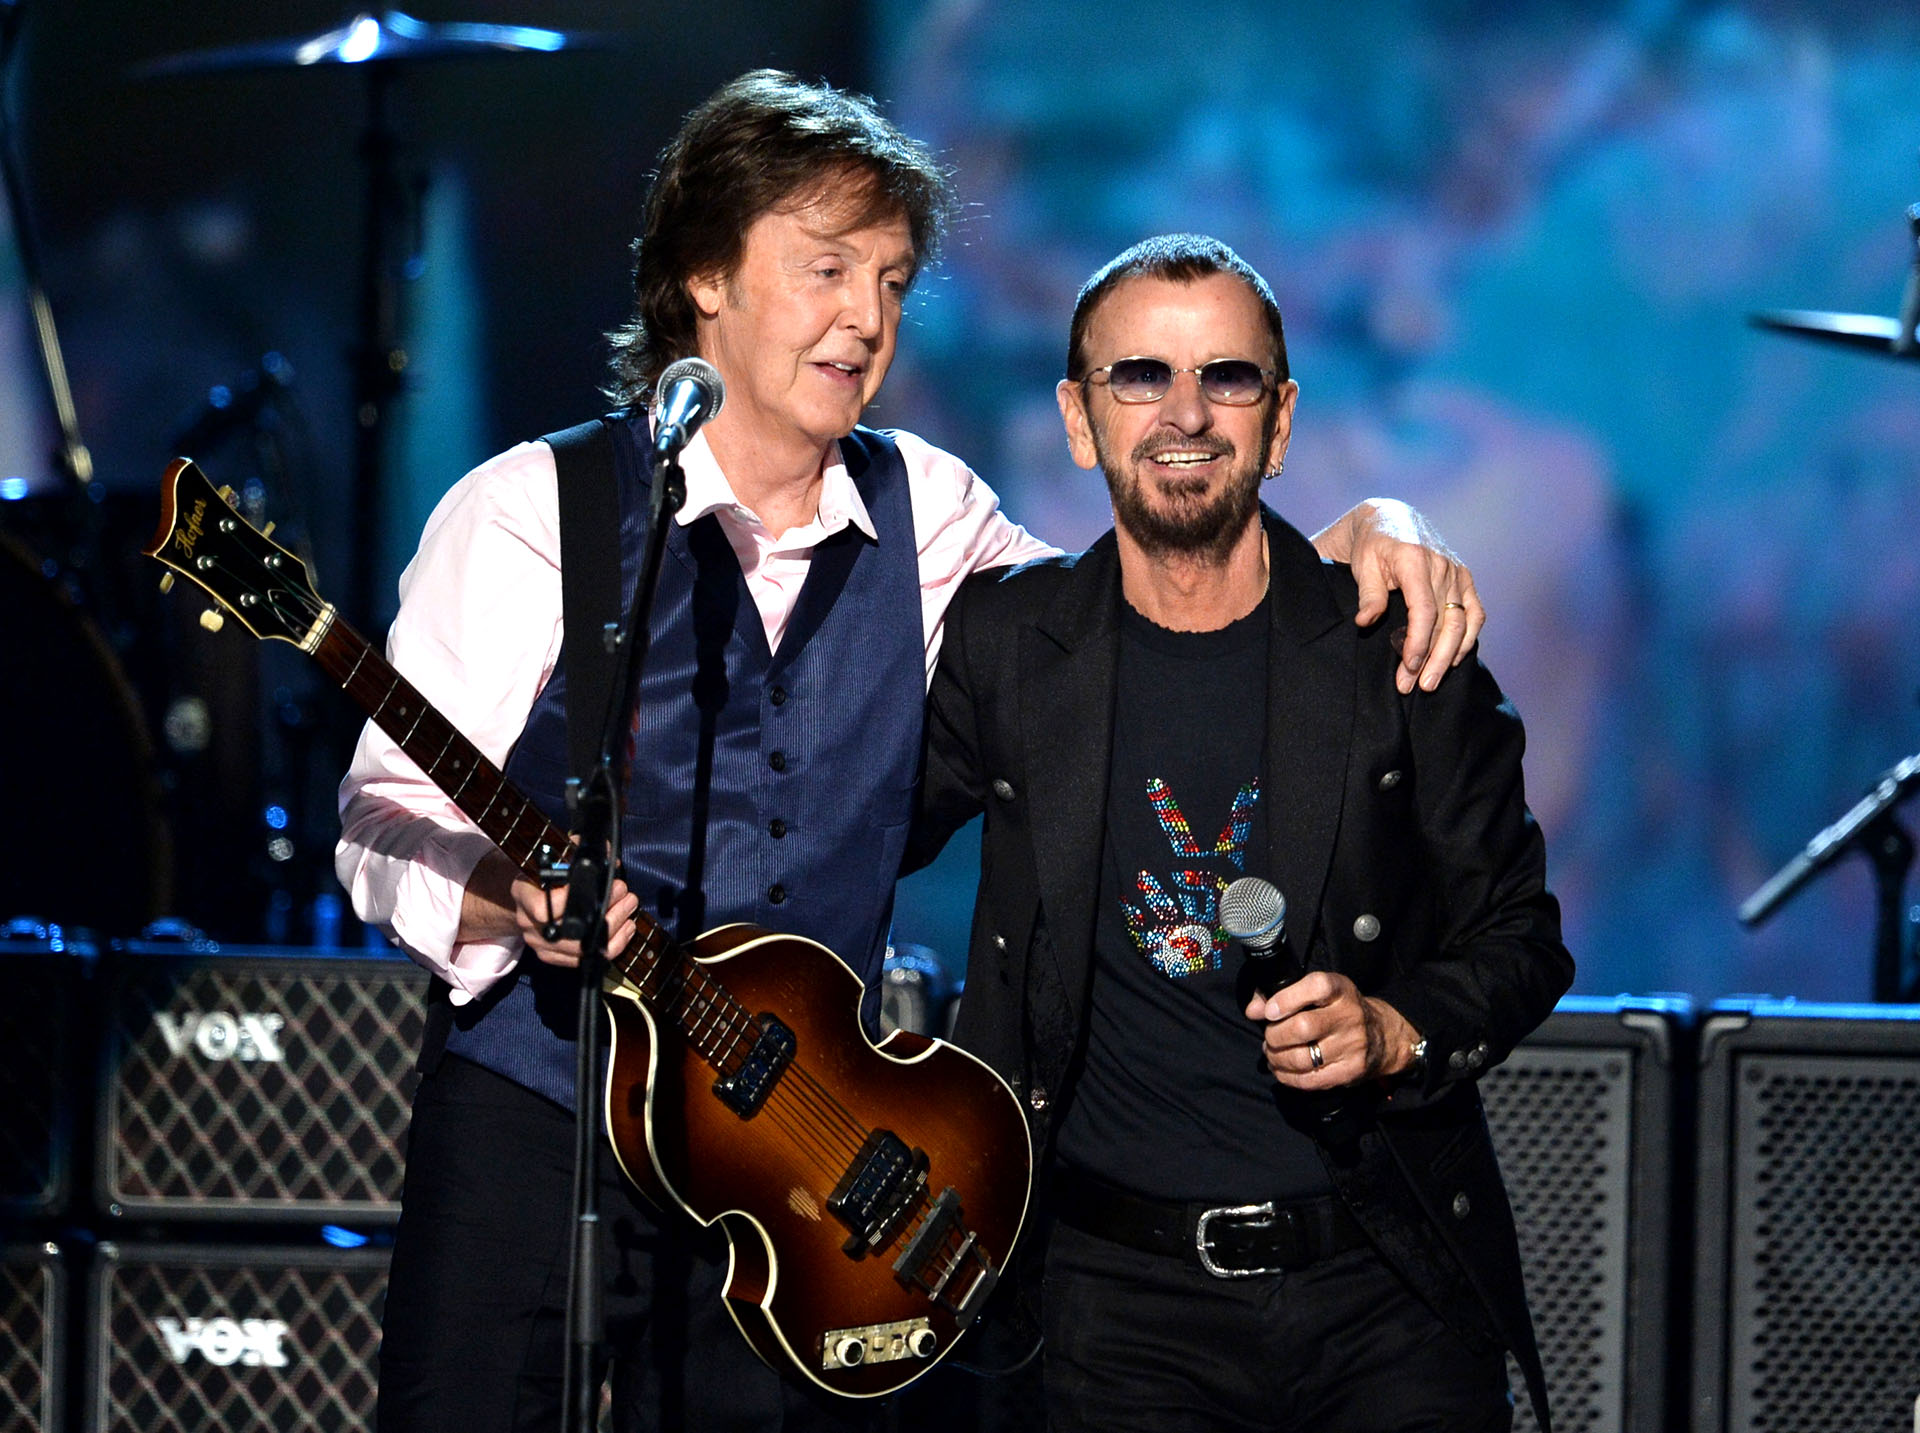 Paul y Ringo siempre mantuvieron una excelente relación. Son los dos Beatles sobrevivientes y mantiene vivo su legado 
Kevin Winter/Getty Images/AFP